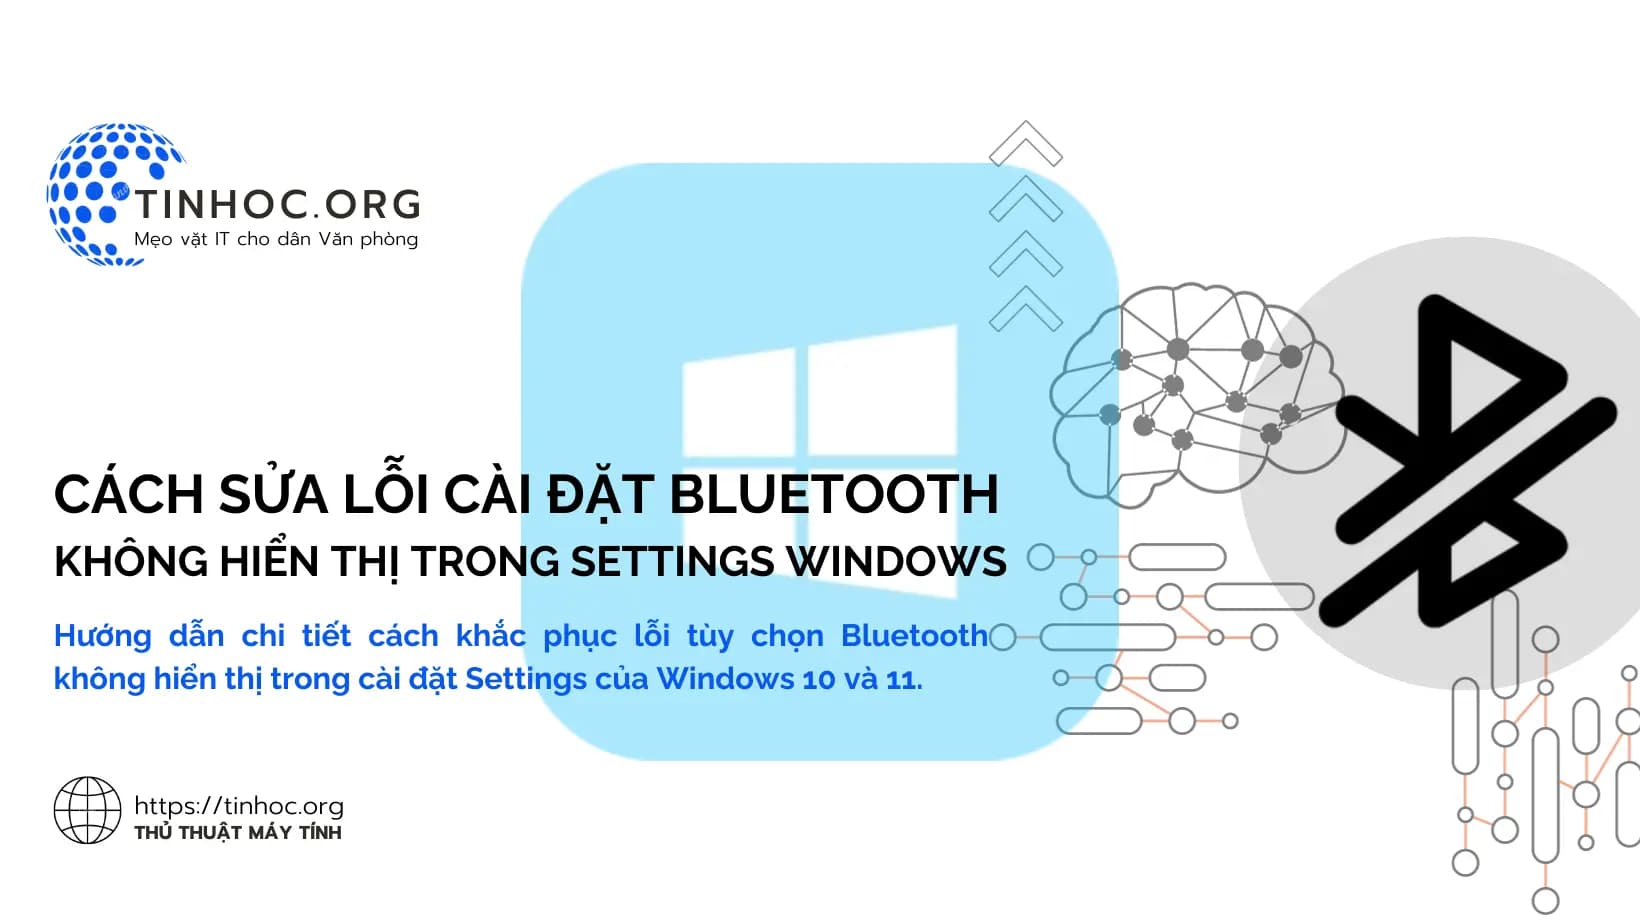 Hướng dẫn chi tiết cách khắc phục lỗi tùy chọn Bluetooth không hiển thị trong cài đặt Settings của Windows 10 và 11.